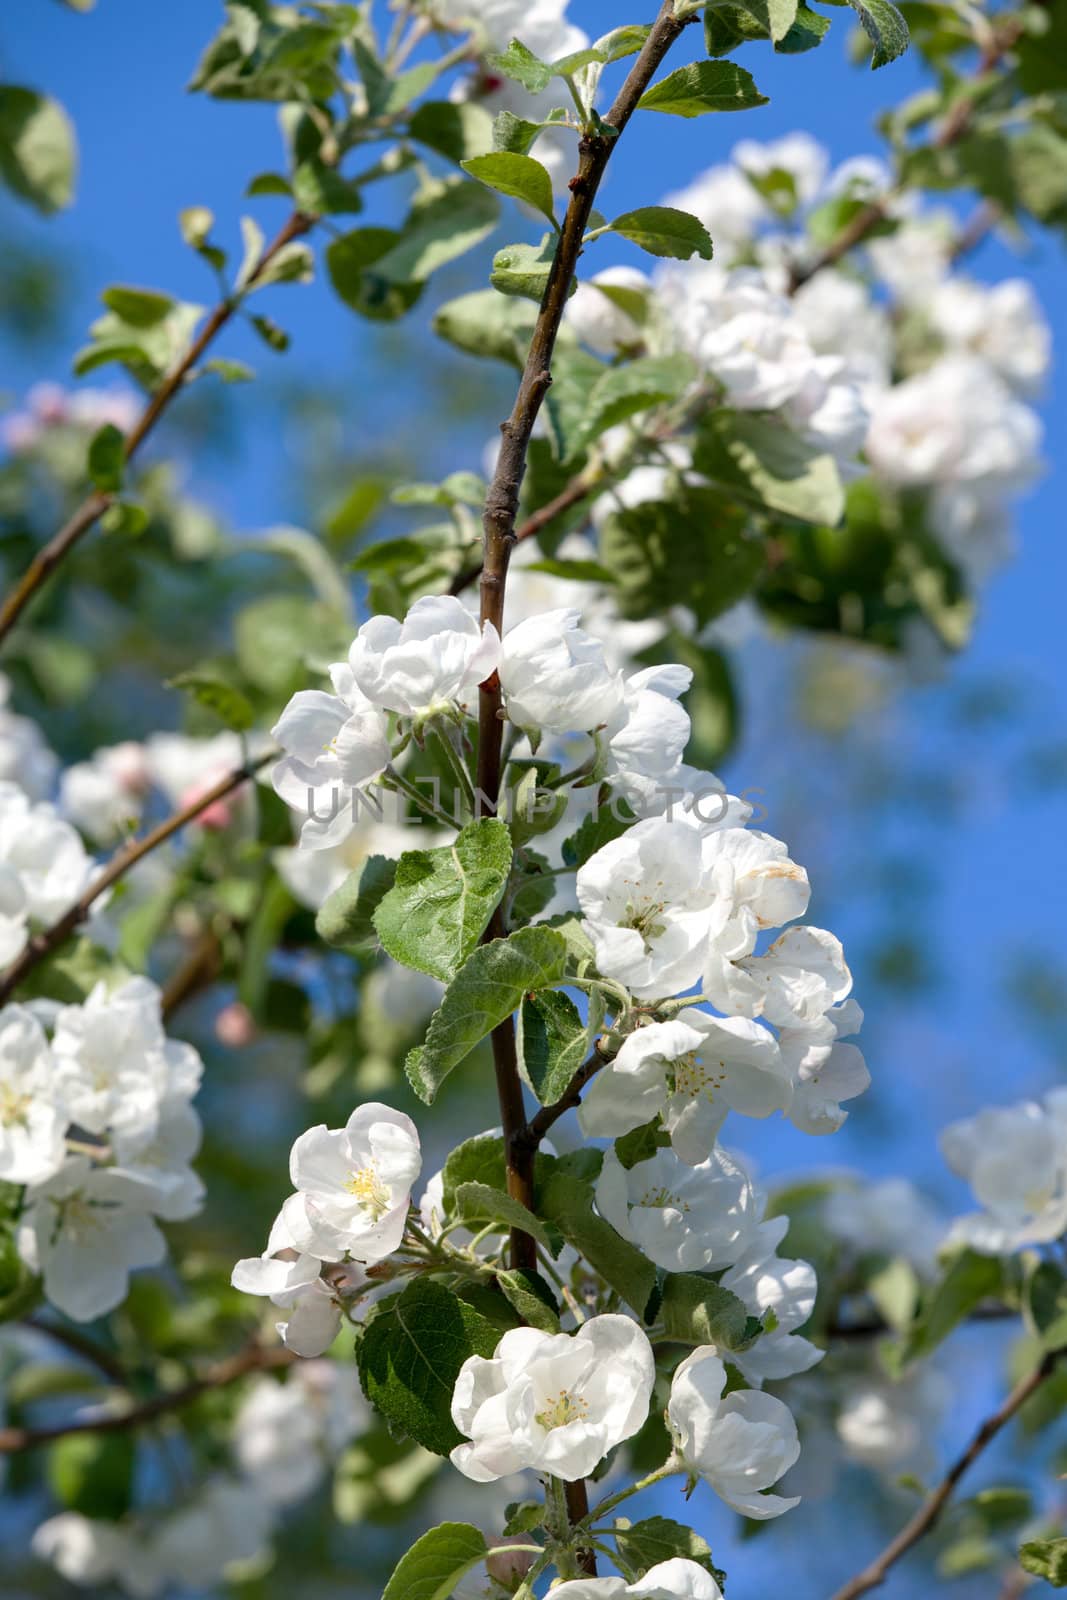 Flowers Blooming Apple Tree on Blue Sky